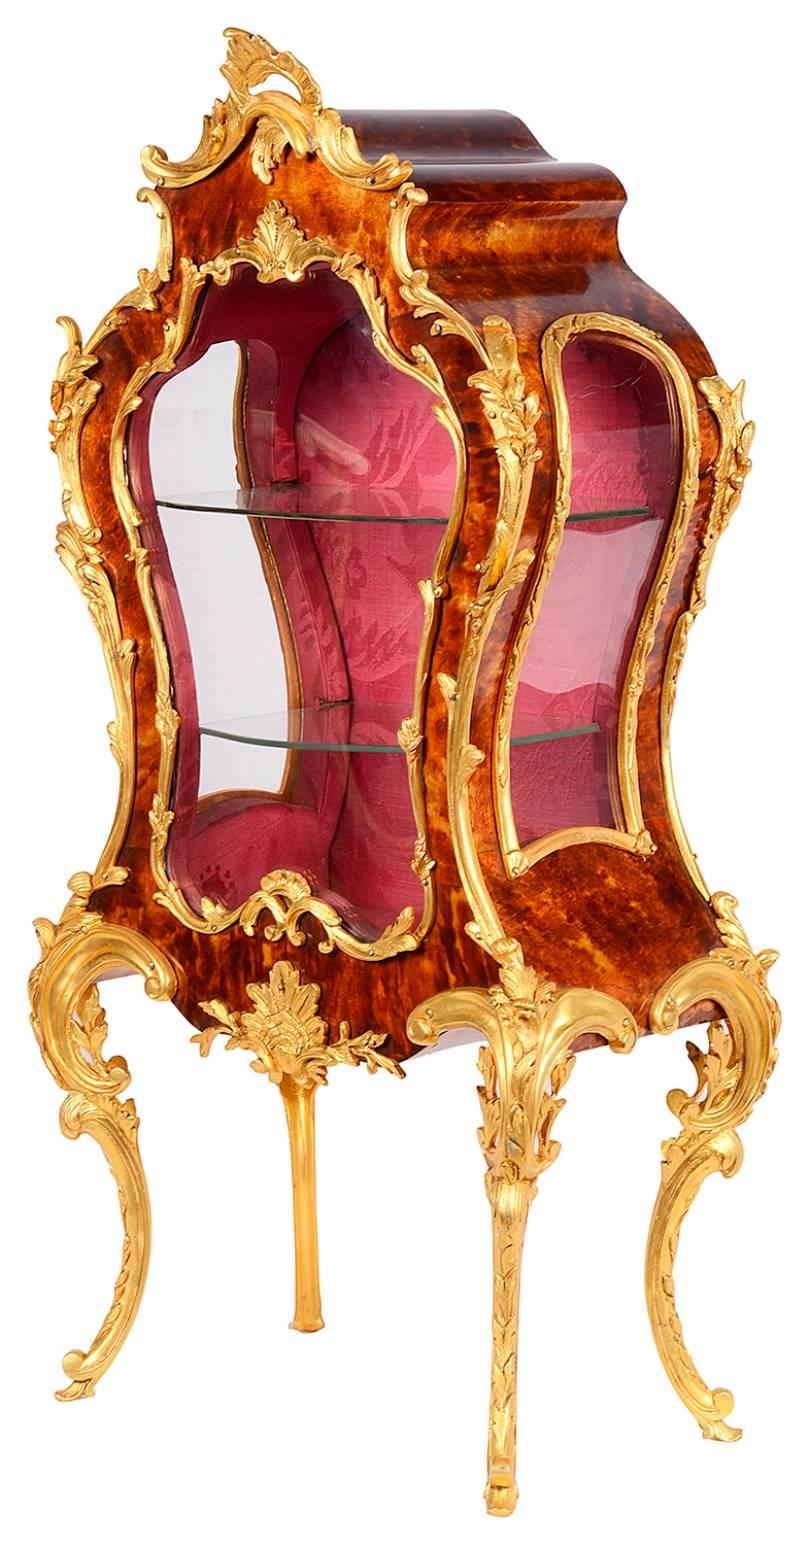 Eine hochwertige Miniatur-Tischvitrine im Rokoko-Stil des späten 19. Jahrhunderts im Louis-XVI-Stil mit vergoldetem Ormolu und Schildpatt. Er hat eine Bombenform und steht auf eleganten Cabriole-Beinen. Die Rückwand lässt sich aufklappen und gibt